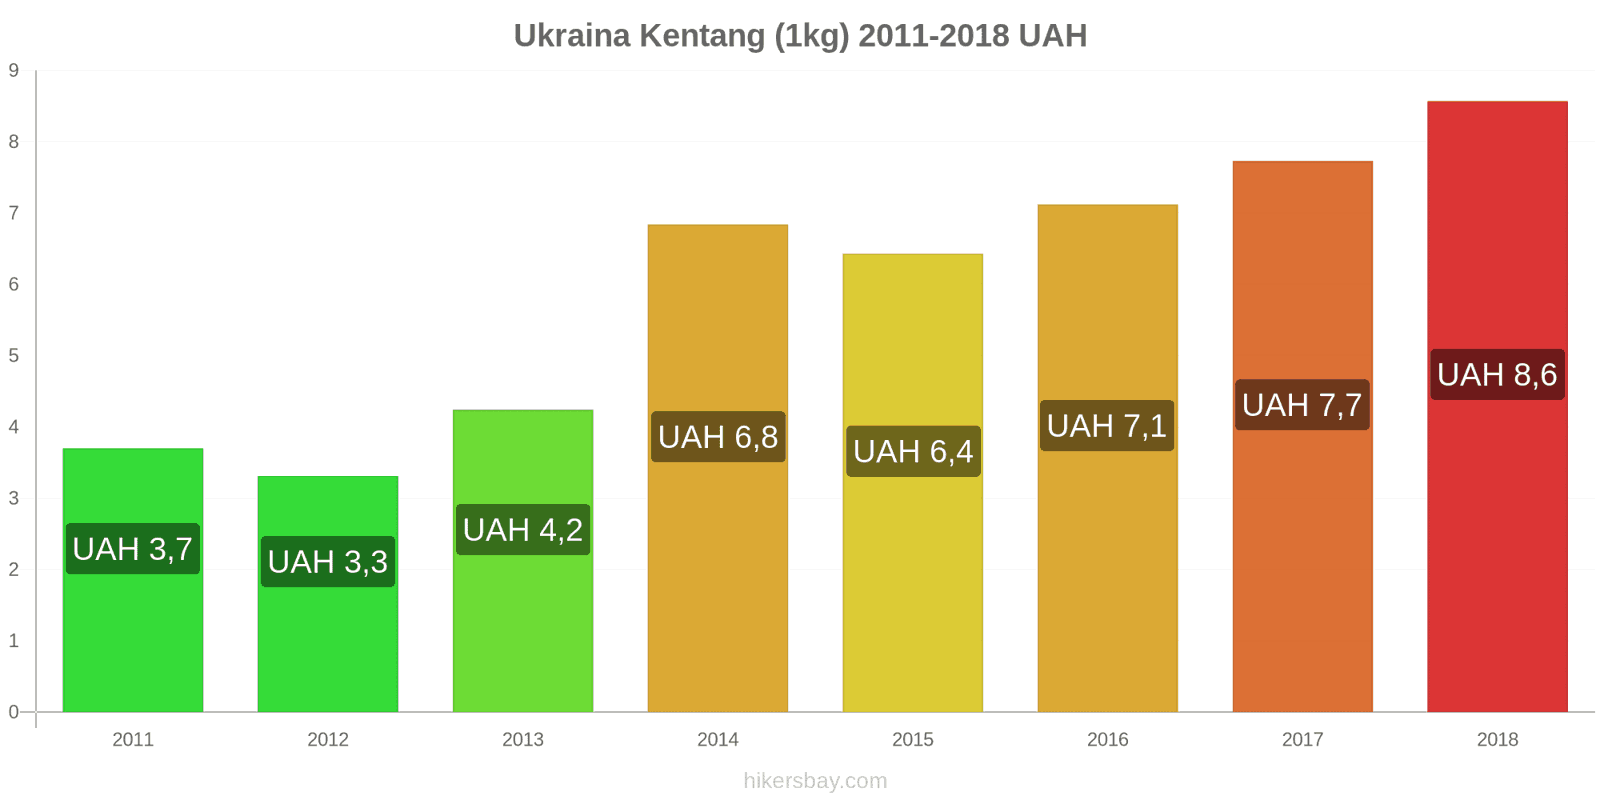 Ukraina perubahan harga Kentang (1kg) hikersbay.com